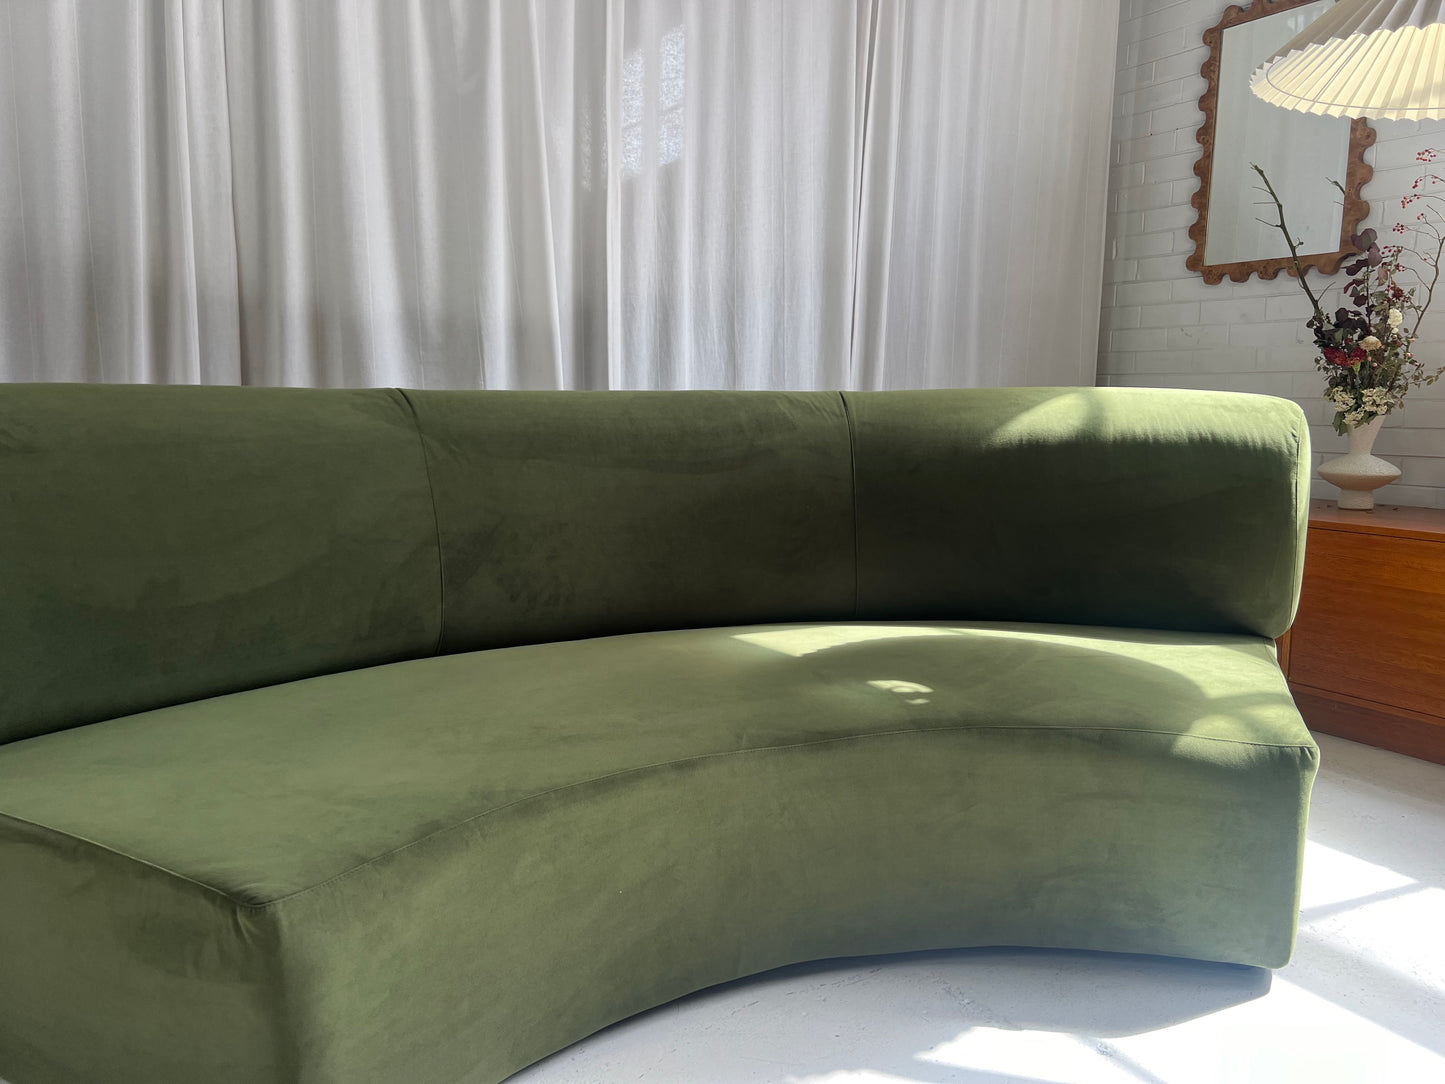 Bespoke Green Curved Sofa